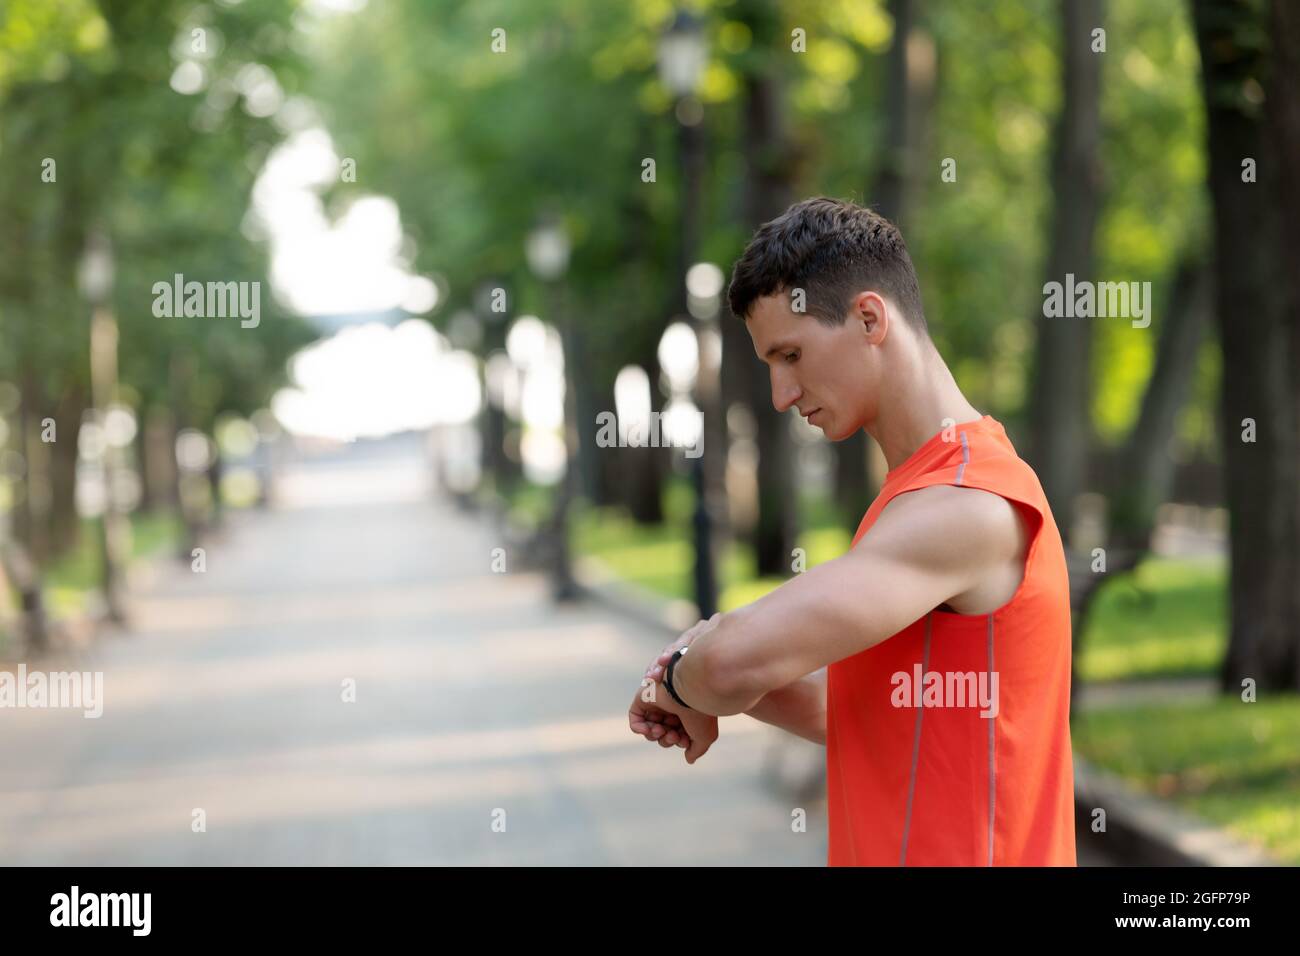 Sportler überprüfen die Zeit auf der Armbanduhr während des sportlichen Trainings im Park, Sportzeitereignisse Stockfoto